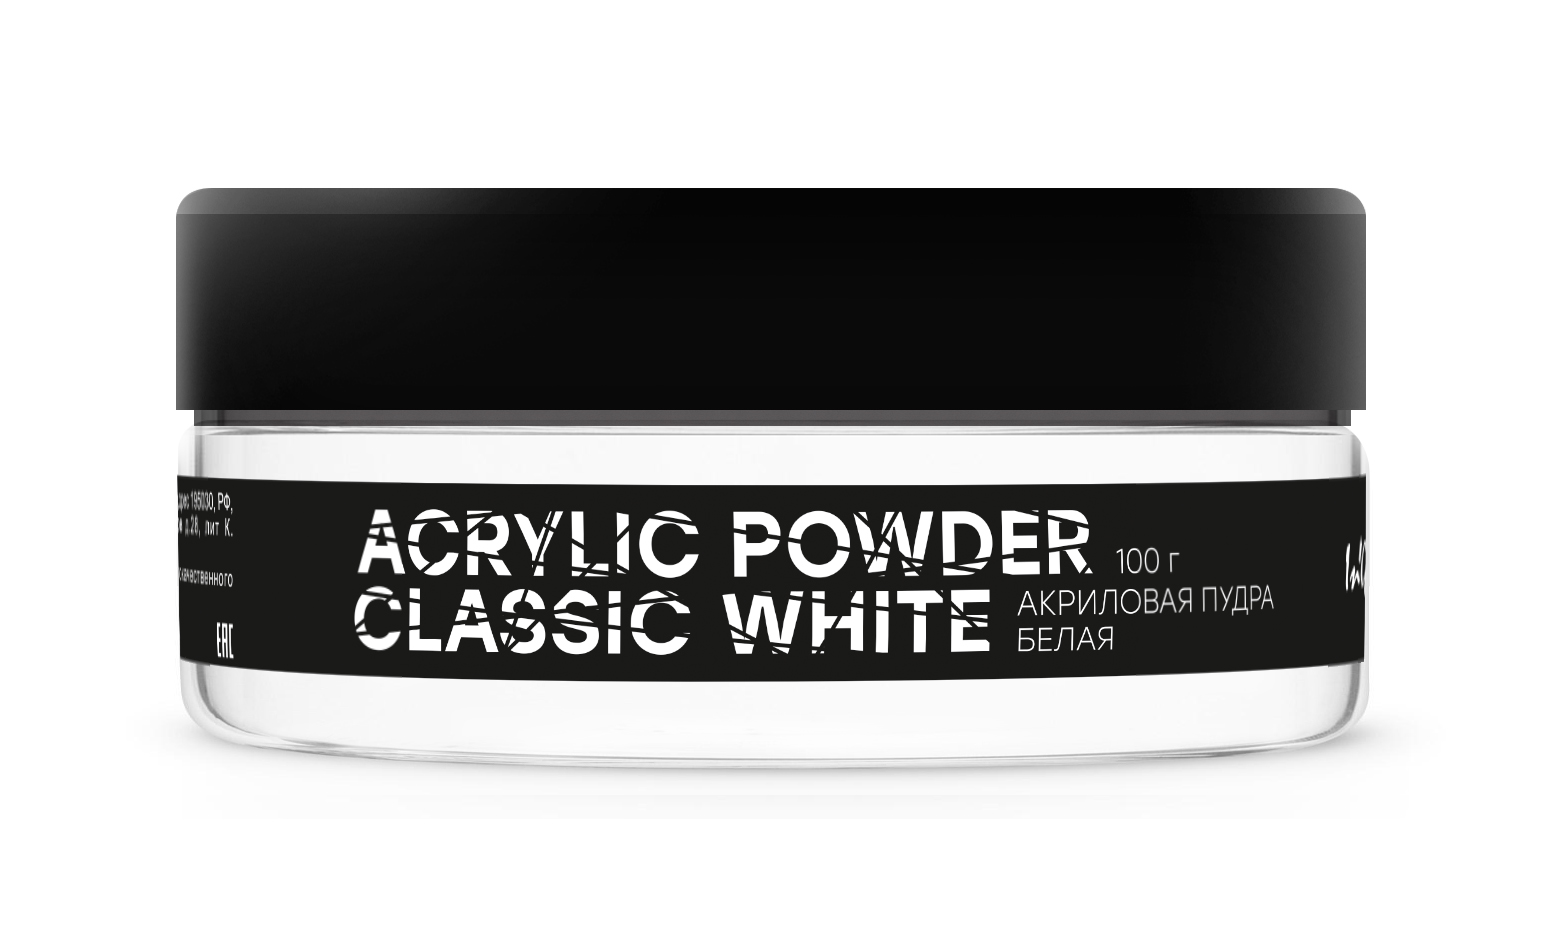 Акриловая пудра белая Acrylic Powder Classic White, 100 г пряжа школьная 100% акрил 150м 50гр 01 белая